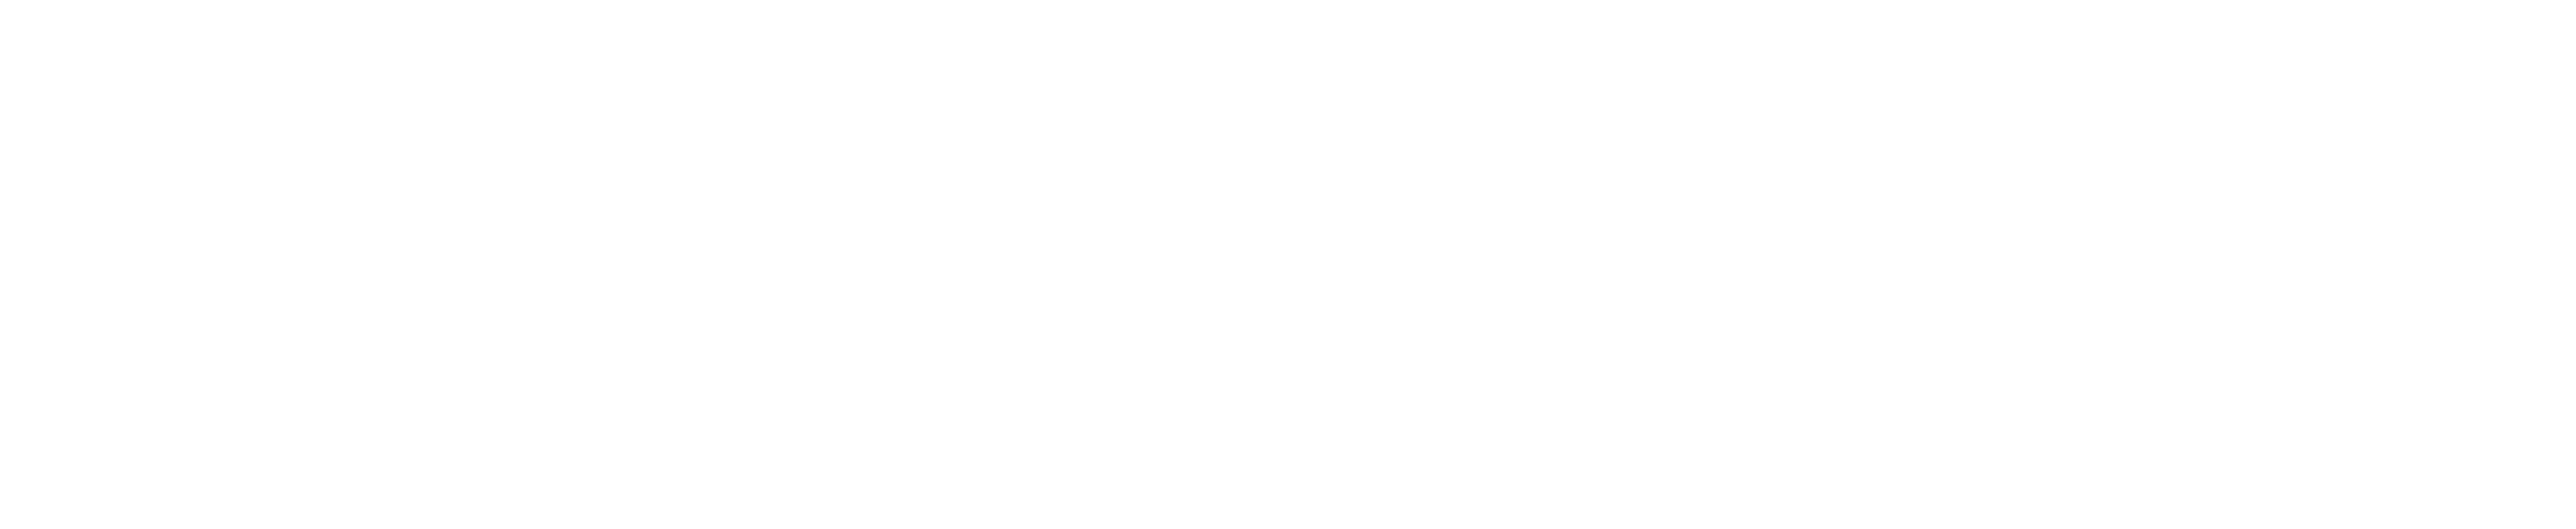 Oscar, ACHN logo 